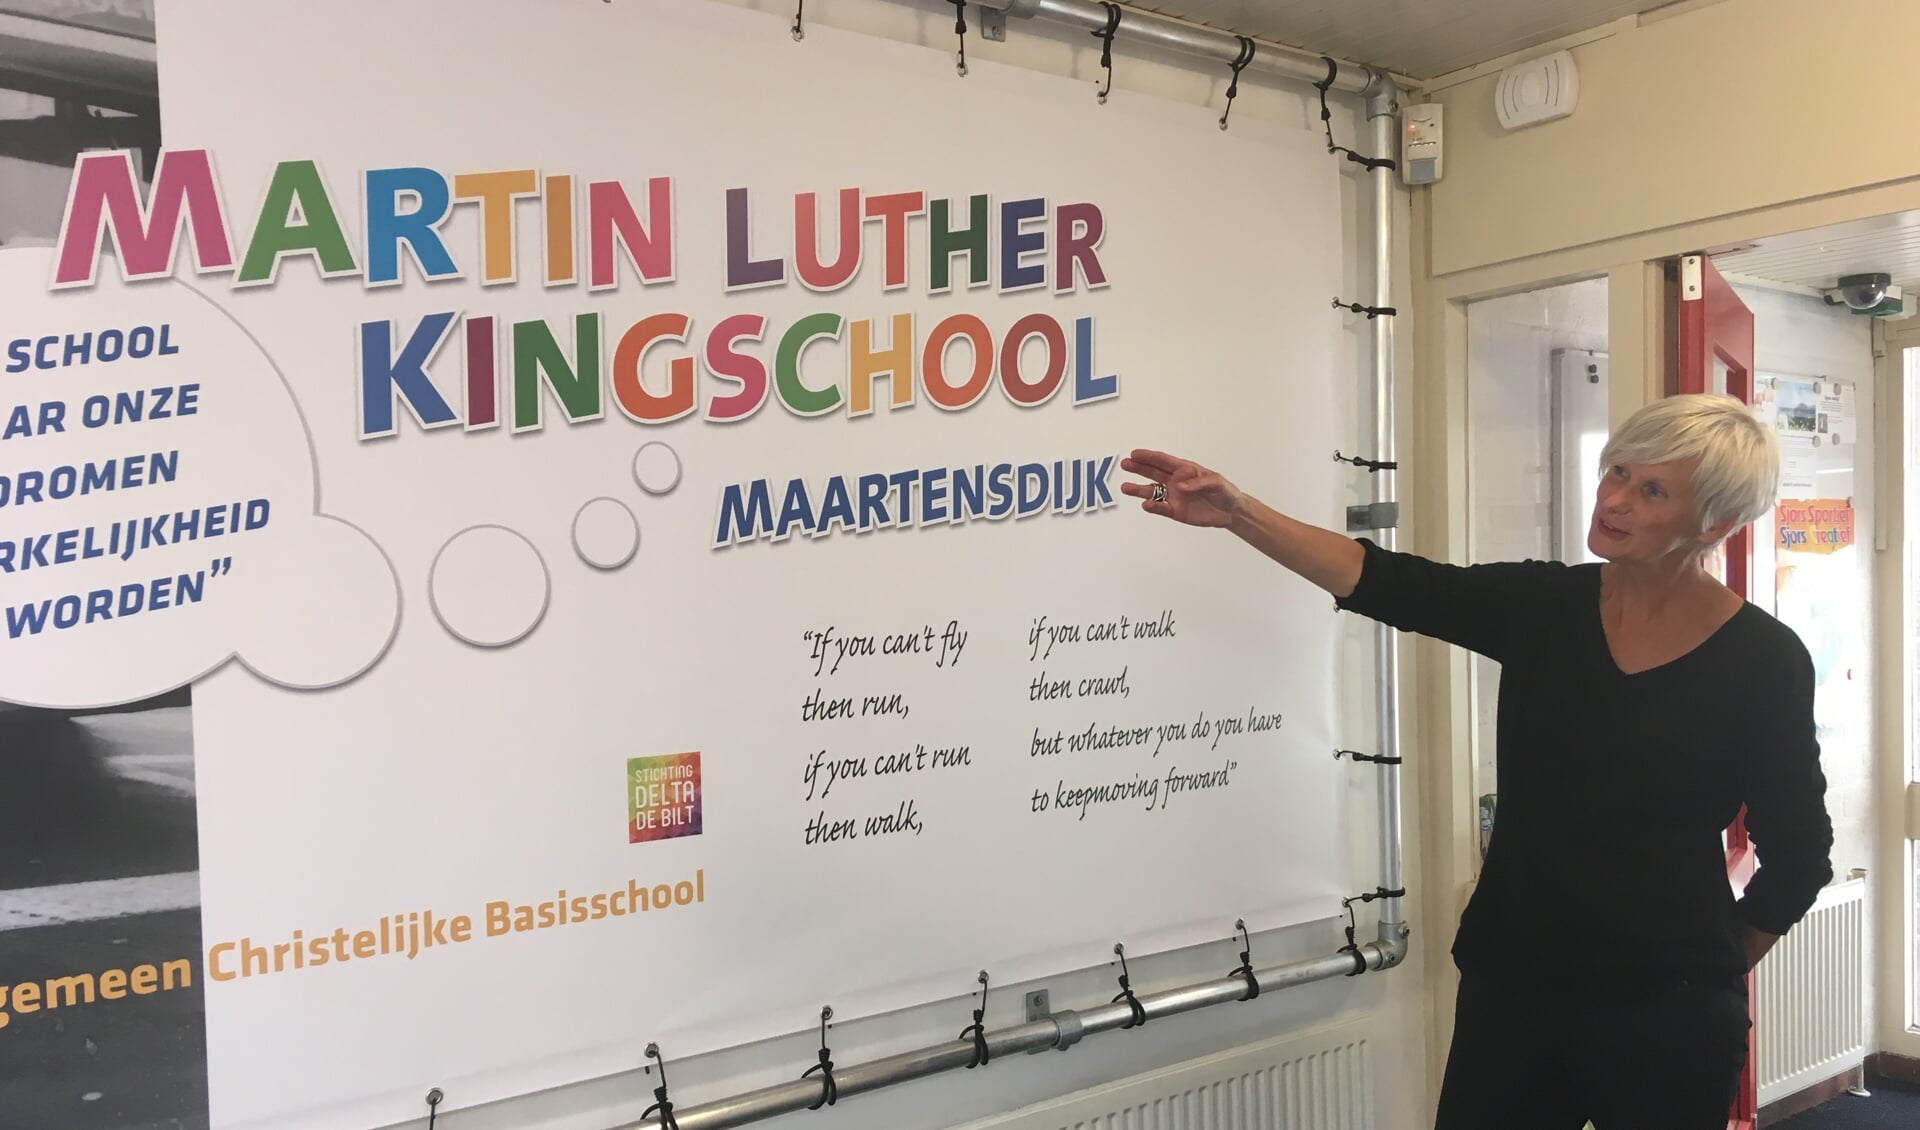 Corinne Bunschoten vindt het motto van de Martin Luther Kingschool nog steeds inspirerend: ‘De school waar dromen werkelijkheid worden’.